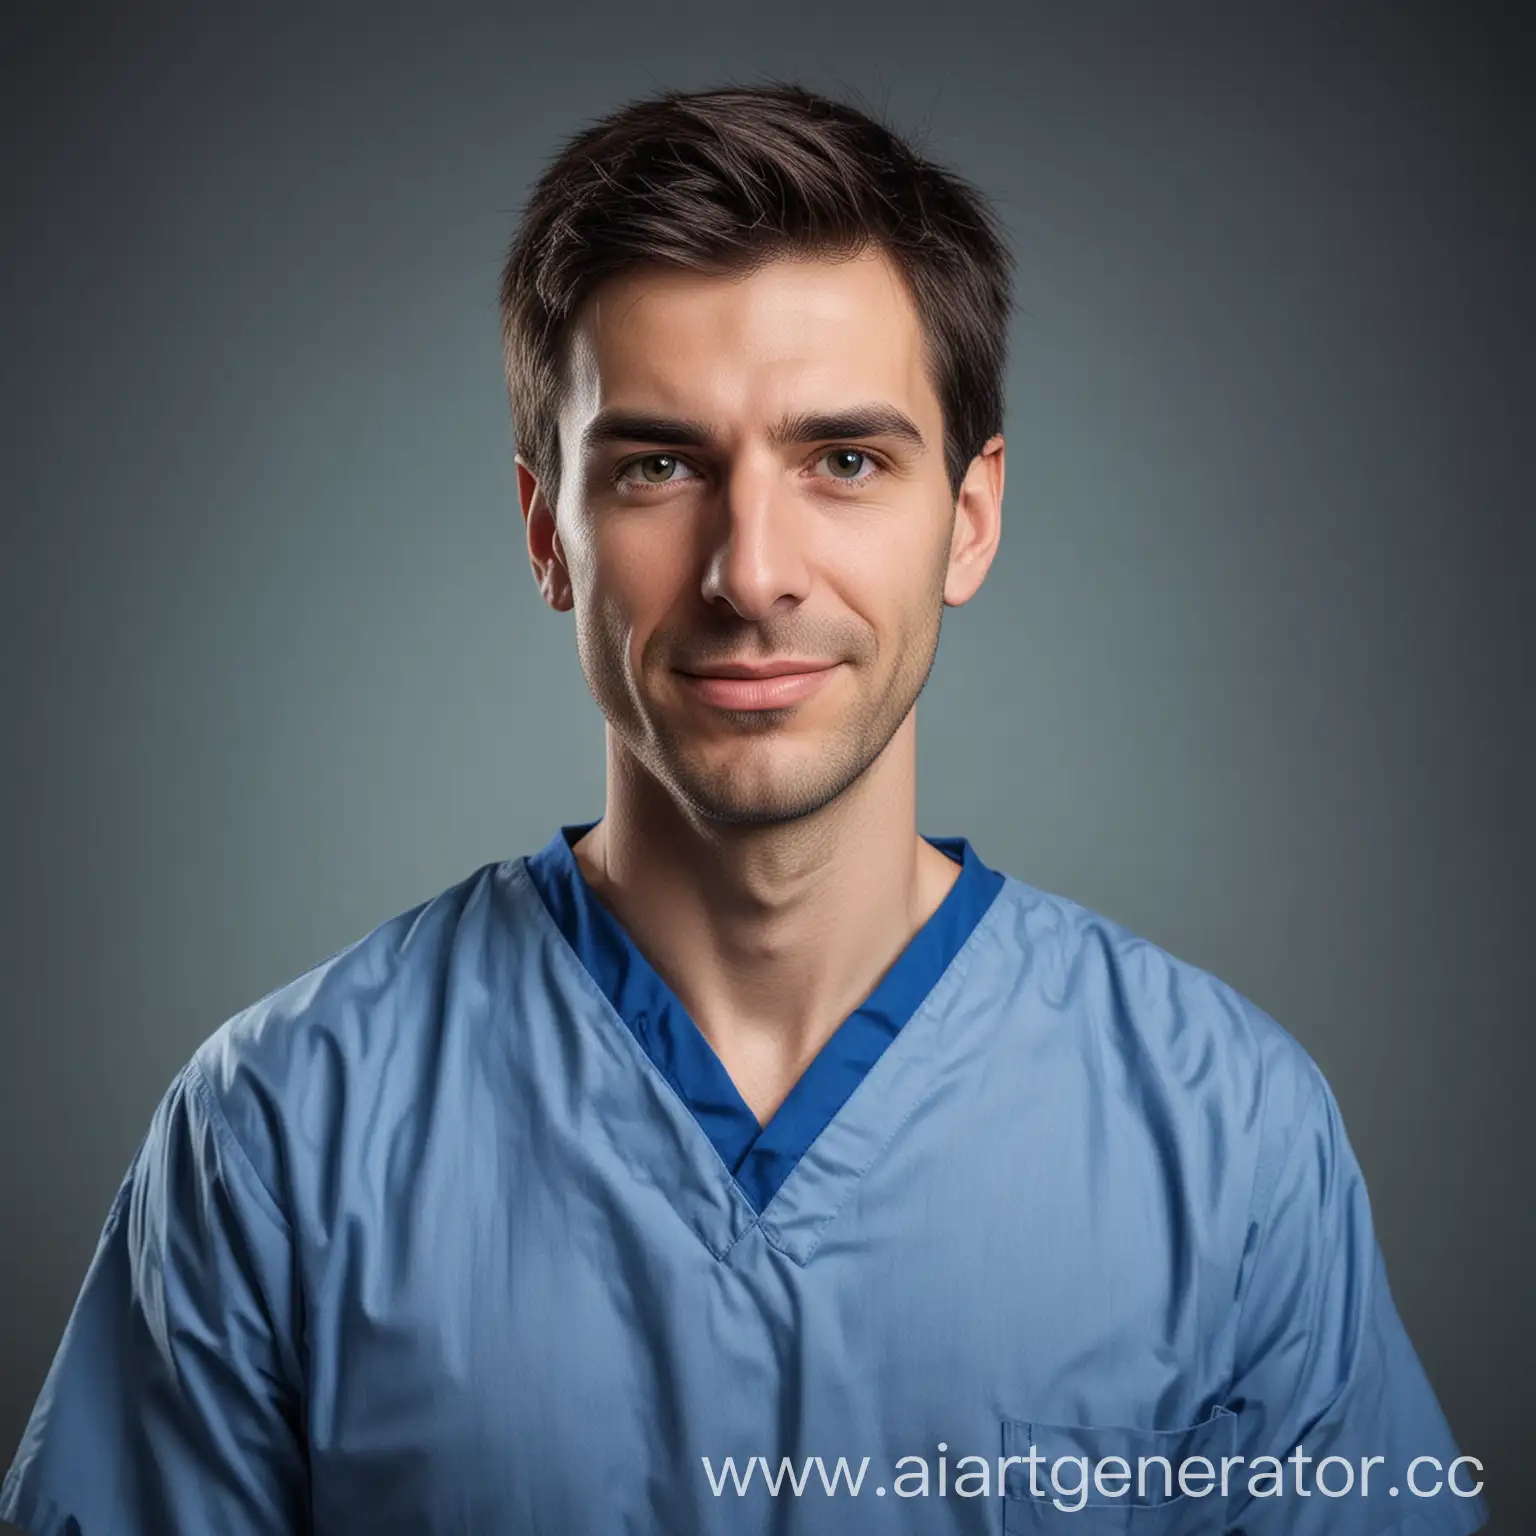 врач стоматолог мужчина портретная фотография в синей медицинской рубашке худое лицо